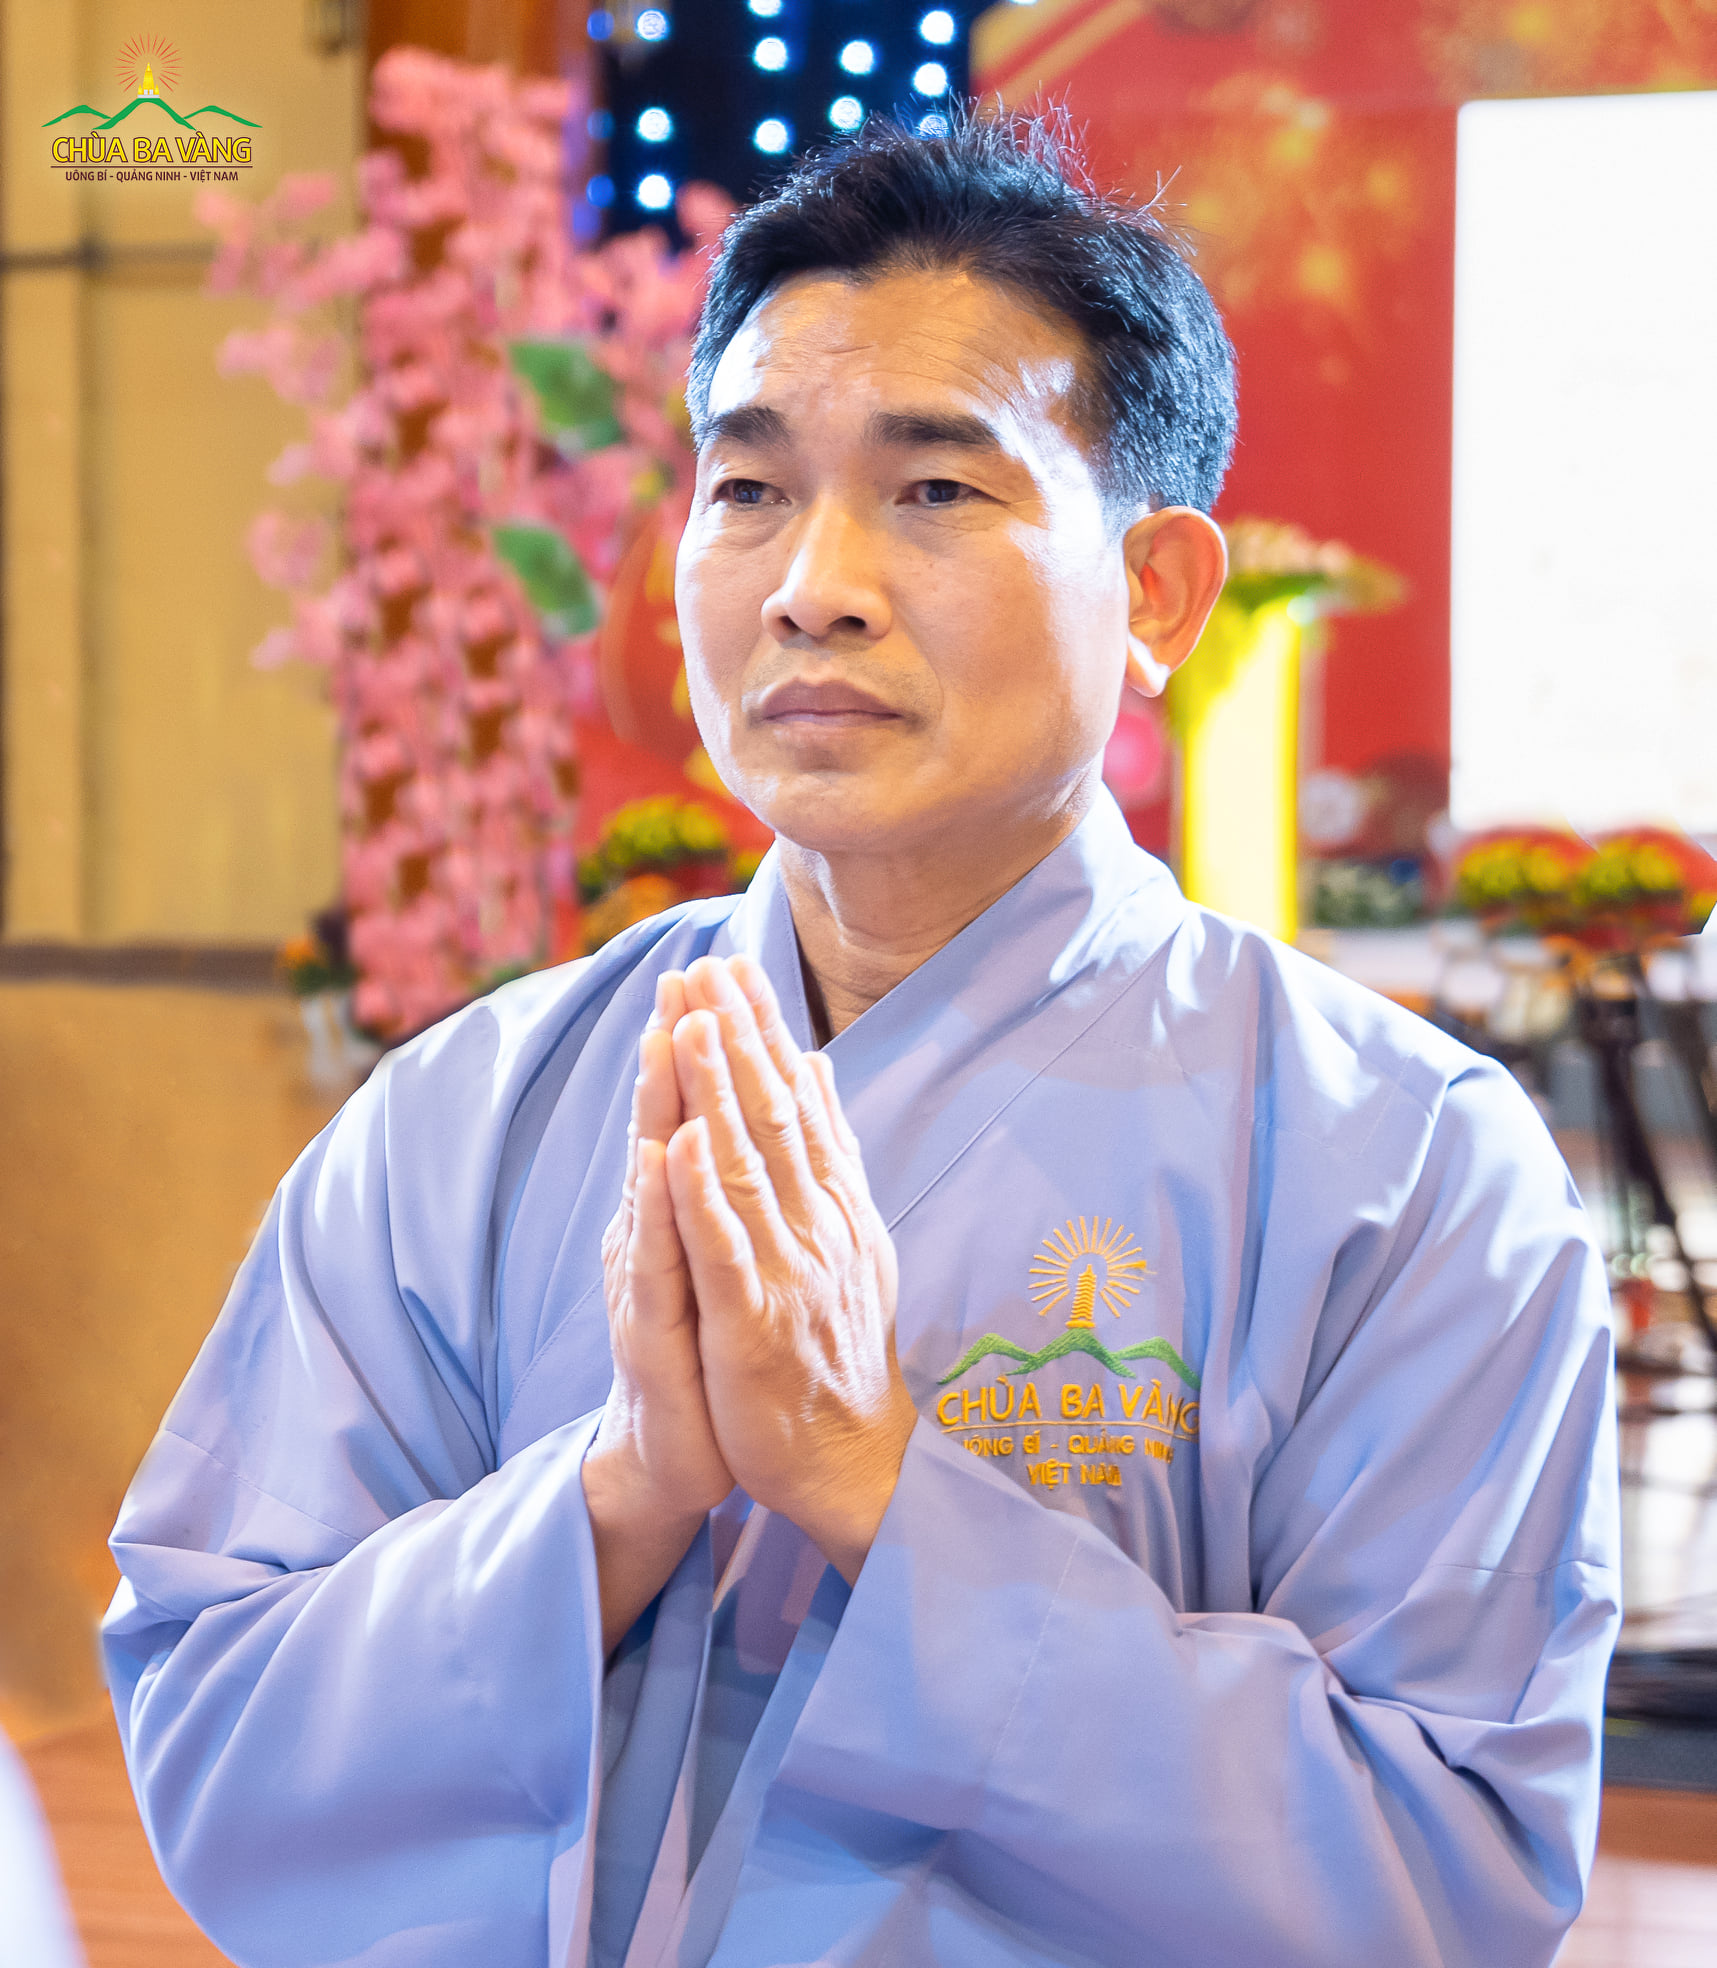 Phật tử Phạm Văn Đài - đạo tràng trưởng đạo tràng Thái Bích, một trong những đạo tràng đang tu học cấm túc tại chùa